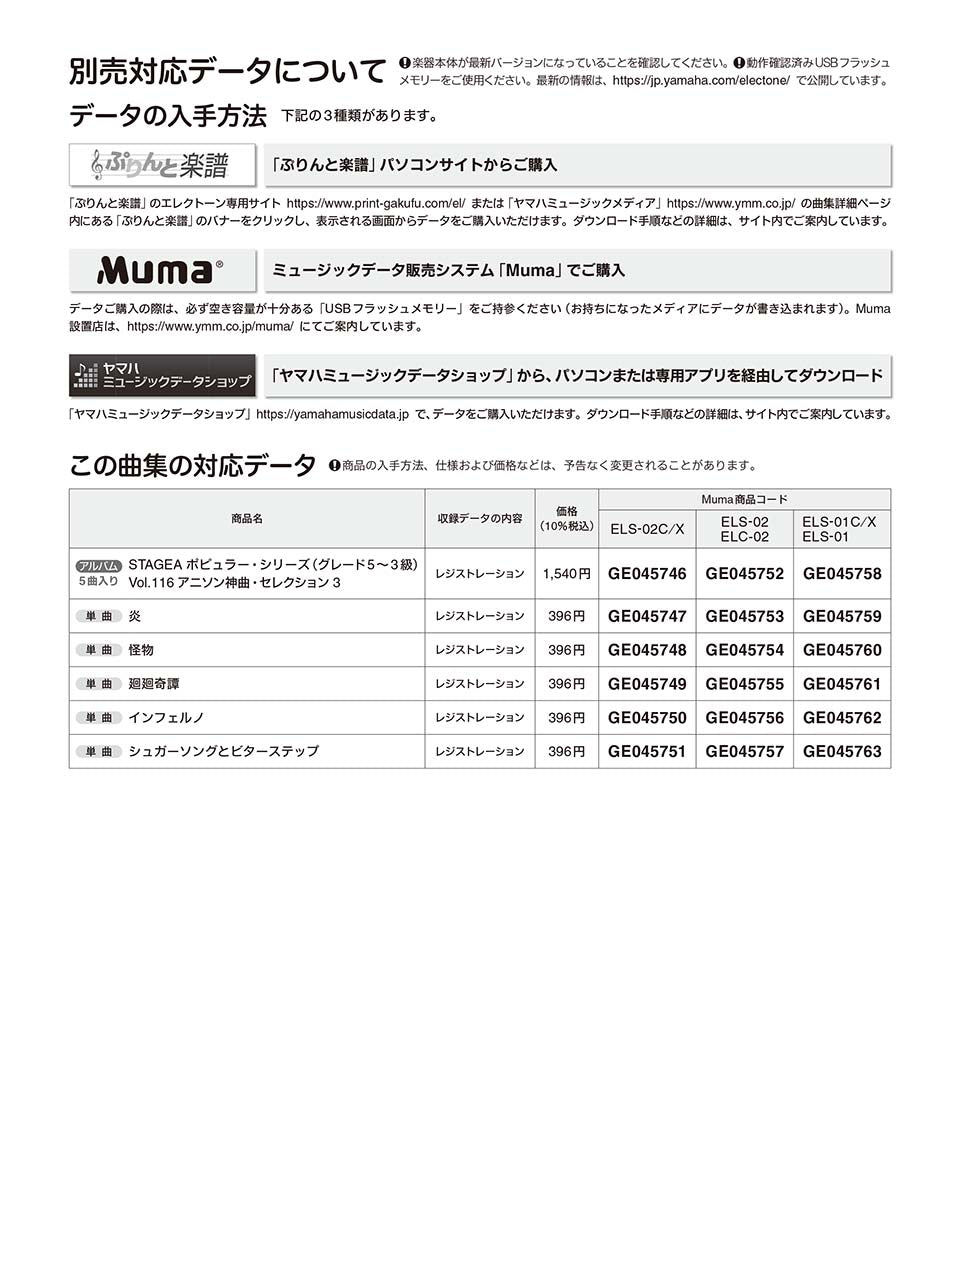 STAGEA ポピュラー 5～3級 Vol.116 アニソン神曲・セレクション3_1